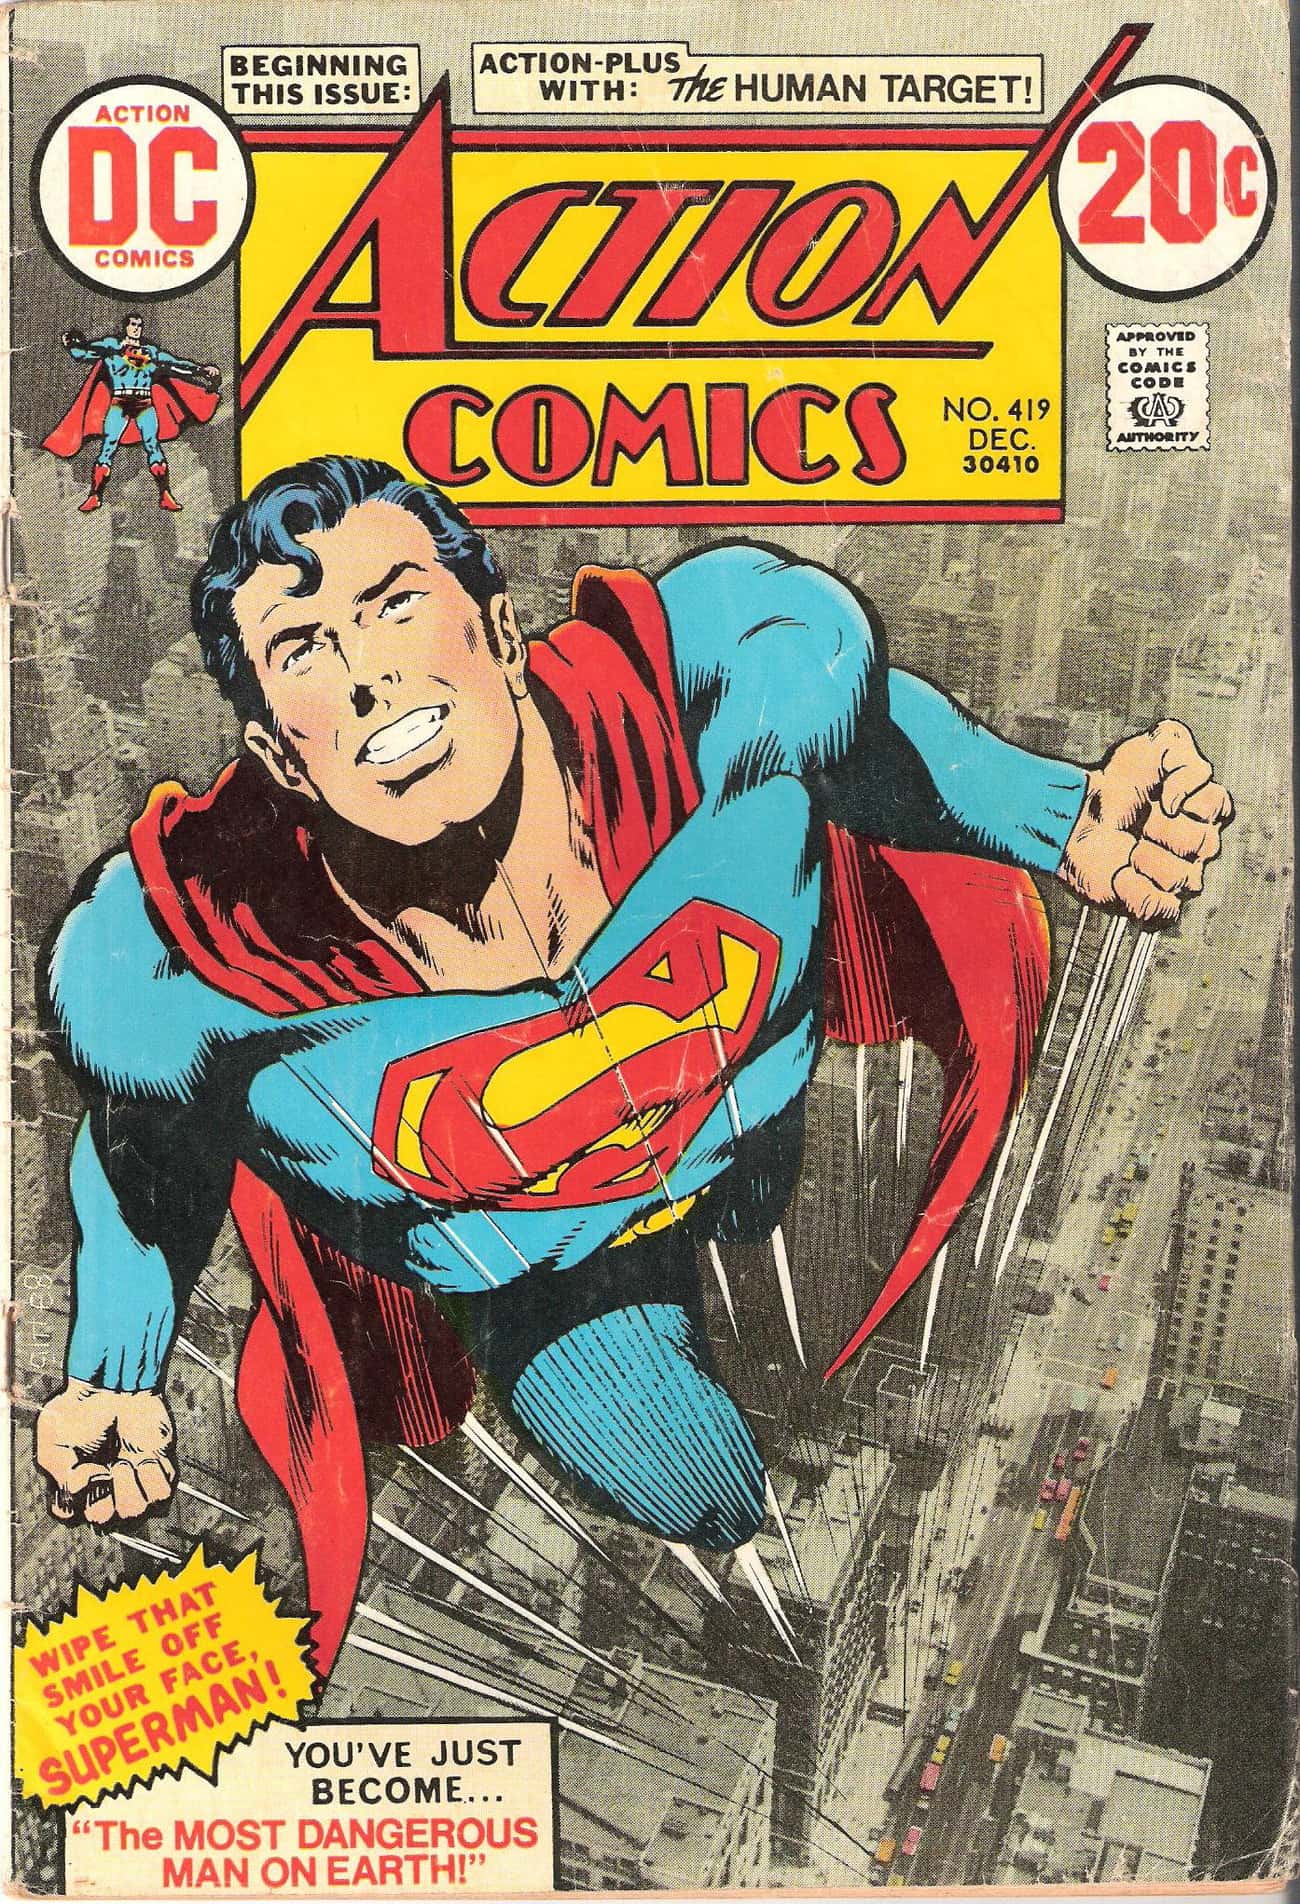 70s Superman